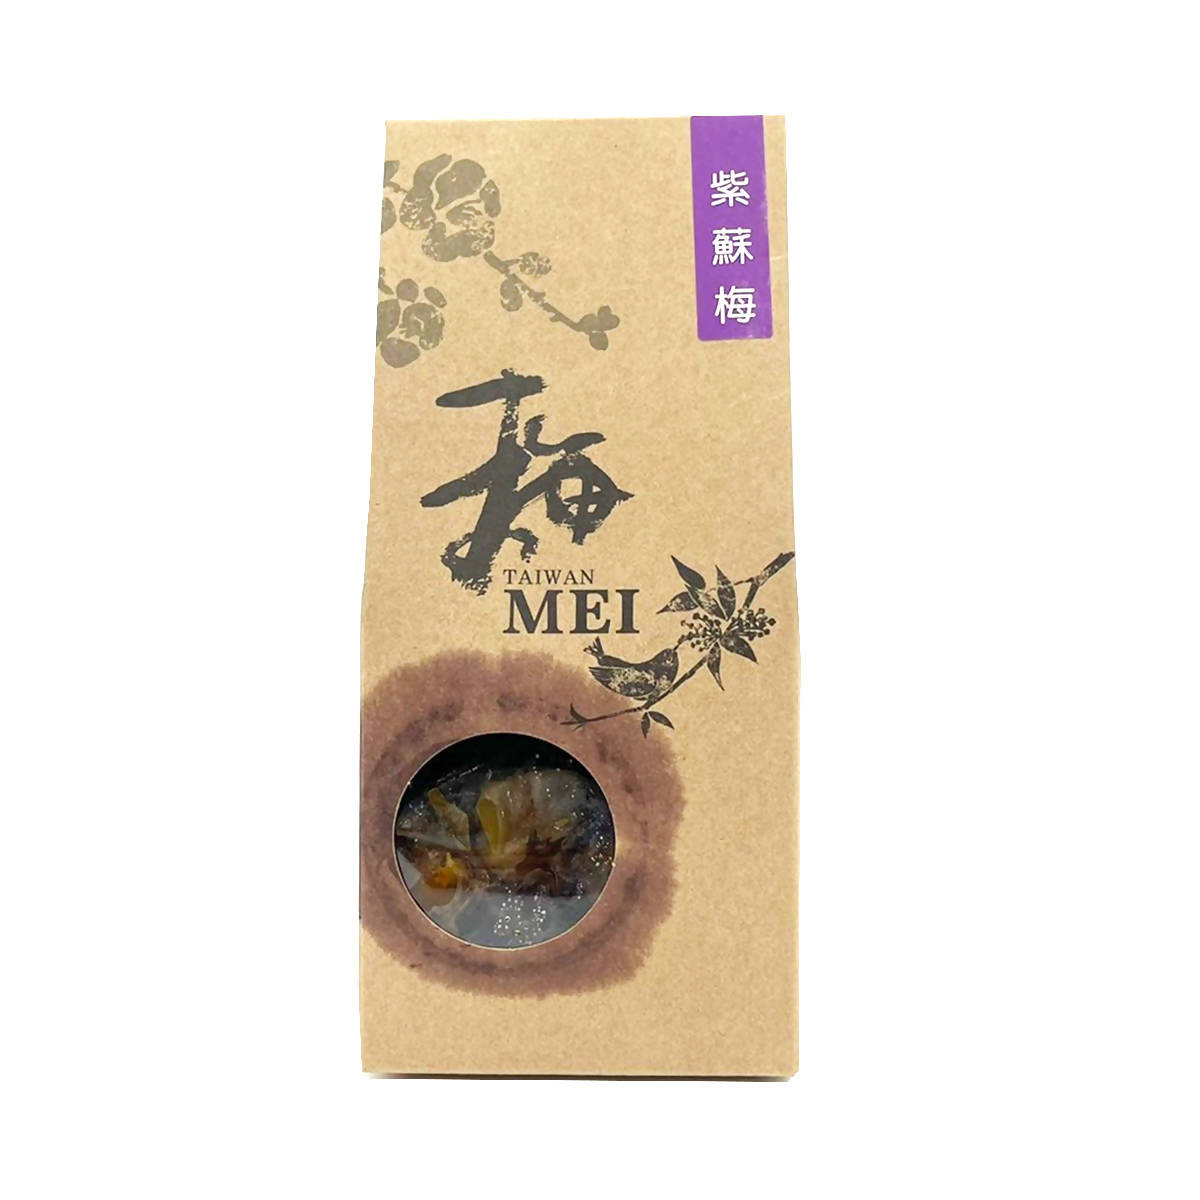 Taiwan Direct Mail【Yuan Rong Tang】YUAN RONG TANG Tea Plum Perilla Plum 250g 